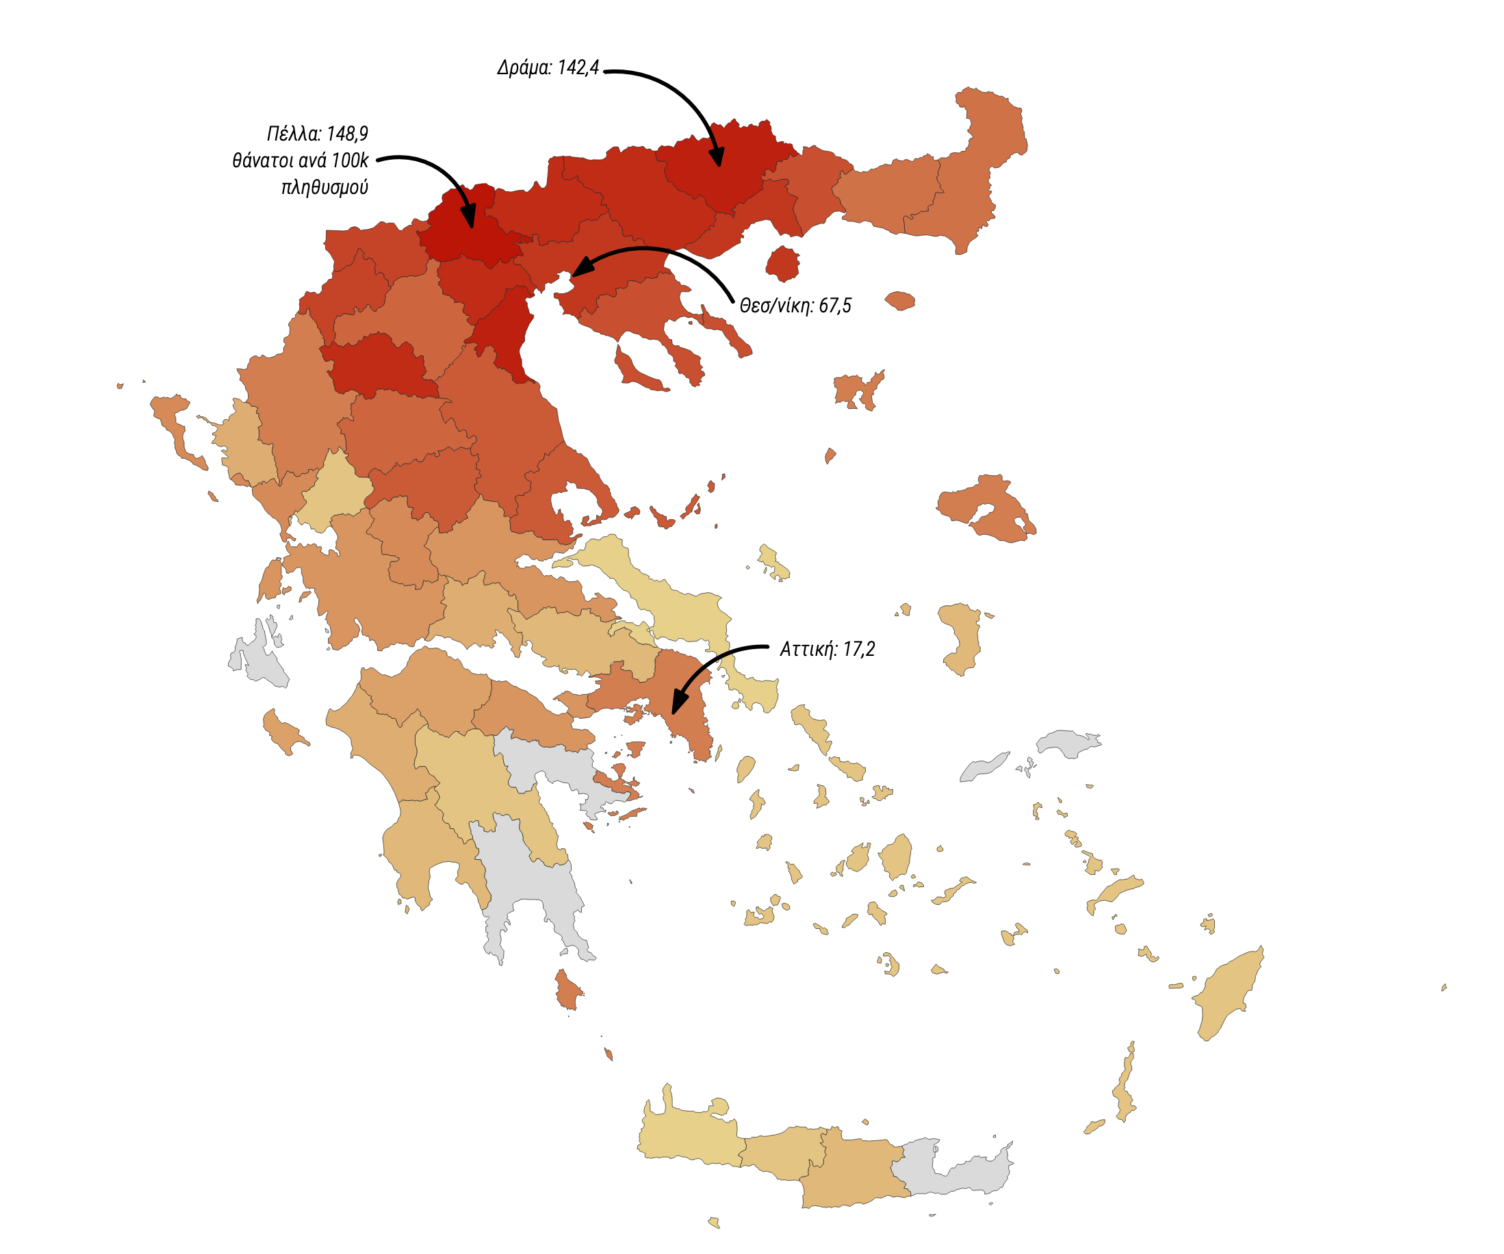 χάρτης με τη γεωγραφική κατανομή των θανάτων στην Ελλάδα από covid-19